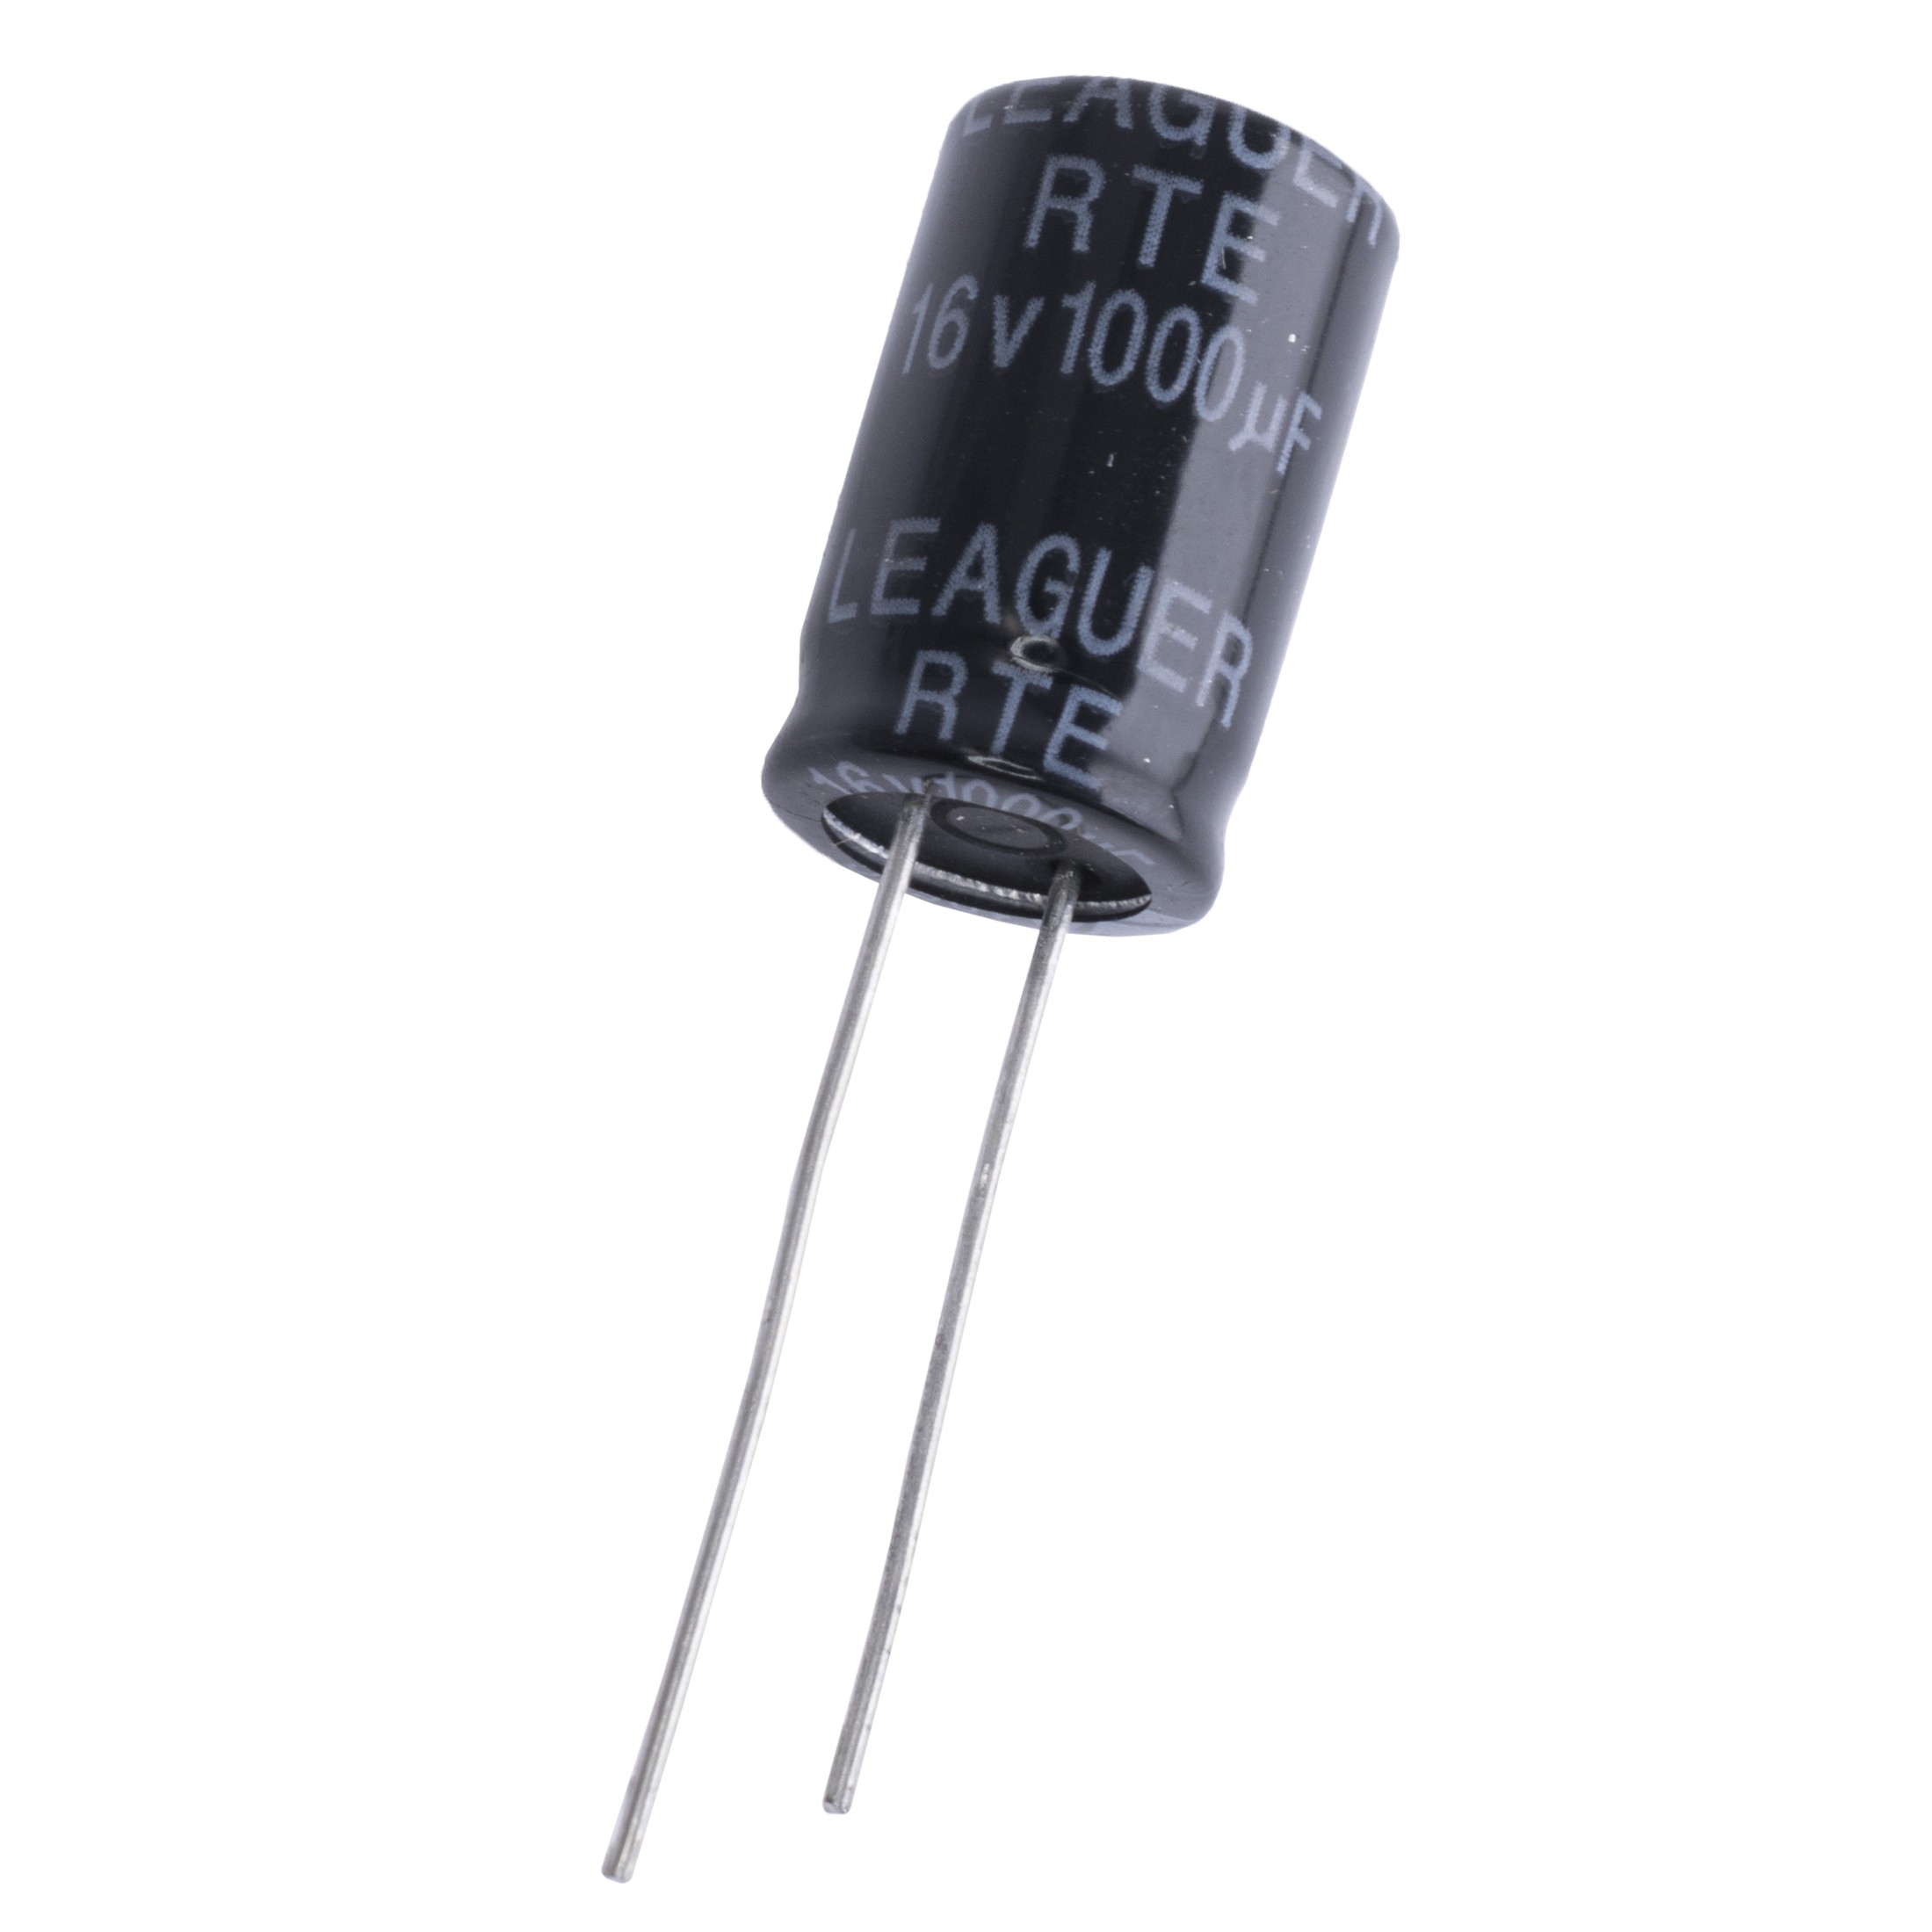 1000uF 16V RTE 10x16mm (low esr) (RTE1C102M1016F-LEAGUER) (электролитический конденсатор низкоимпедансный)